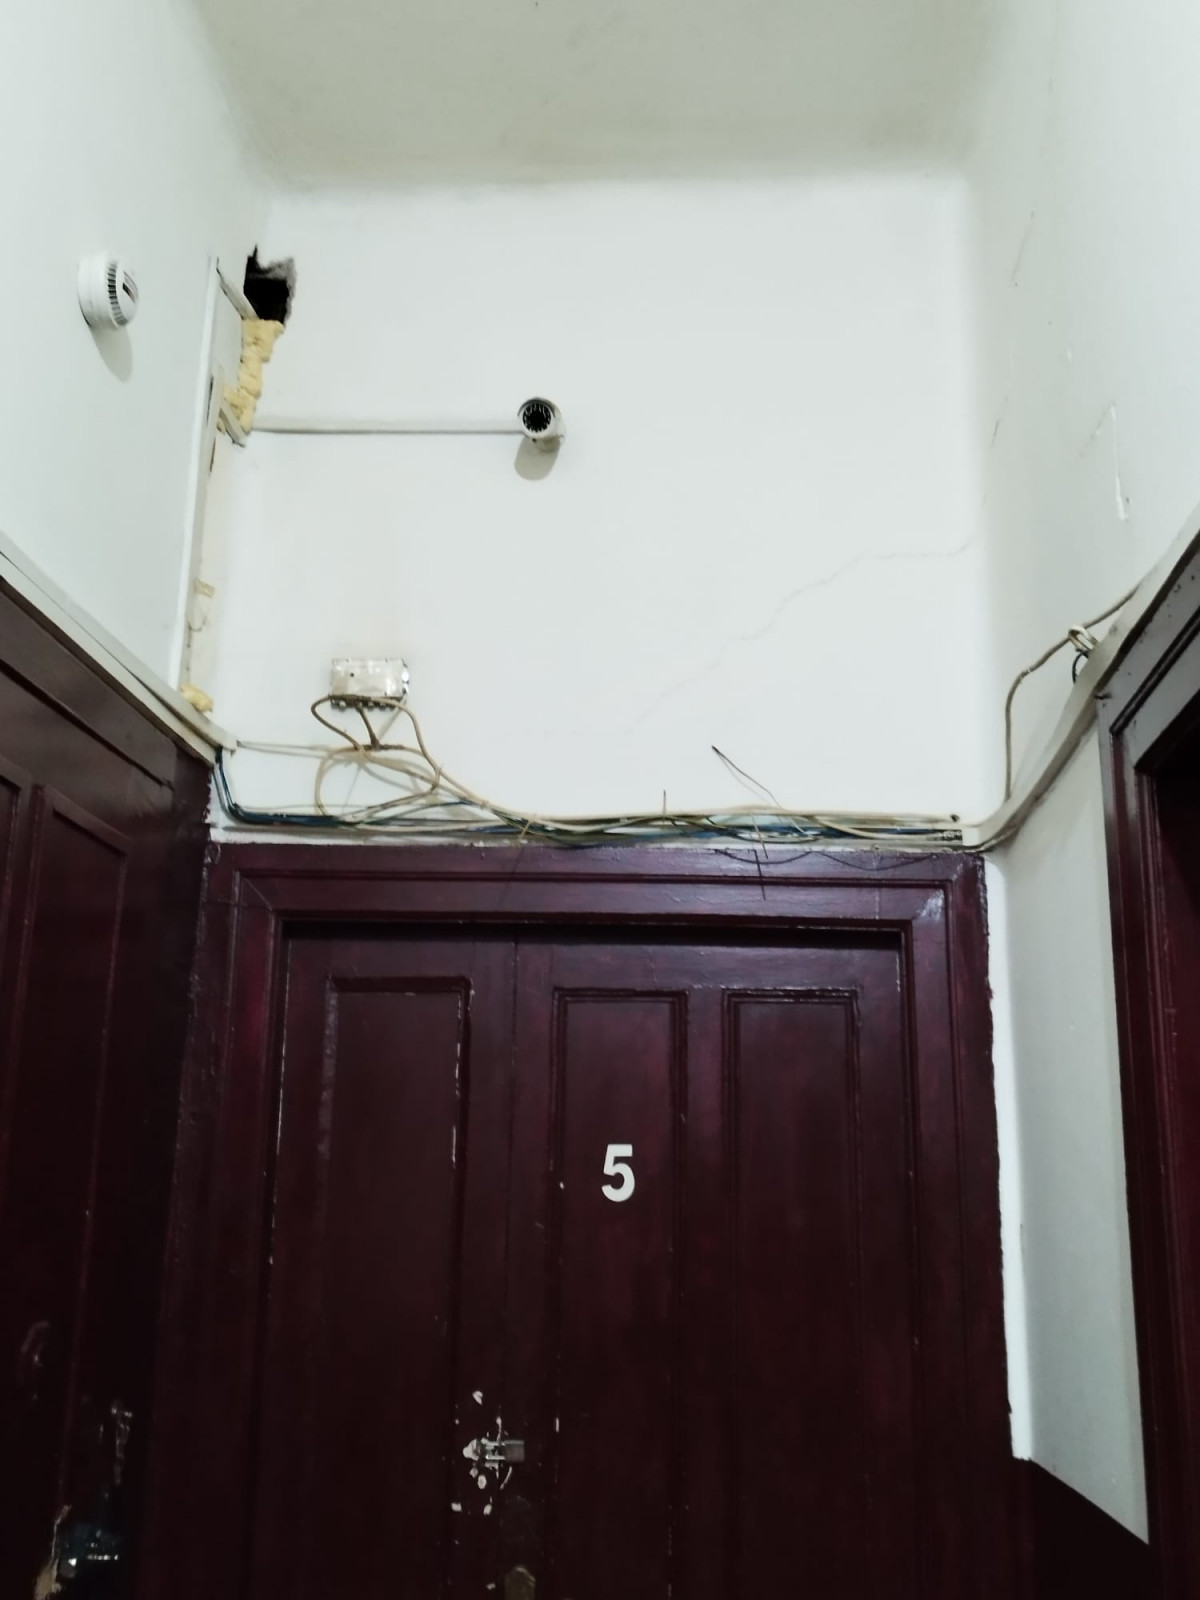 Puertas en Fisterra 11 con numeraciu00f3n y cables al aire en una foto facilitada por los inquilinos